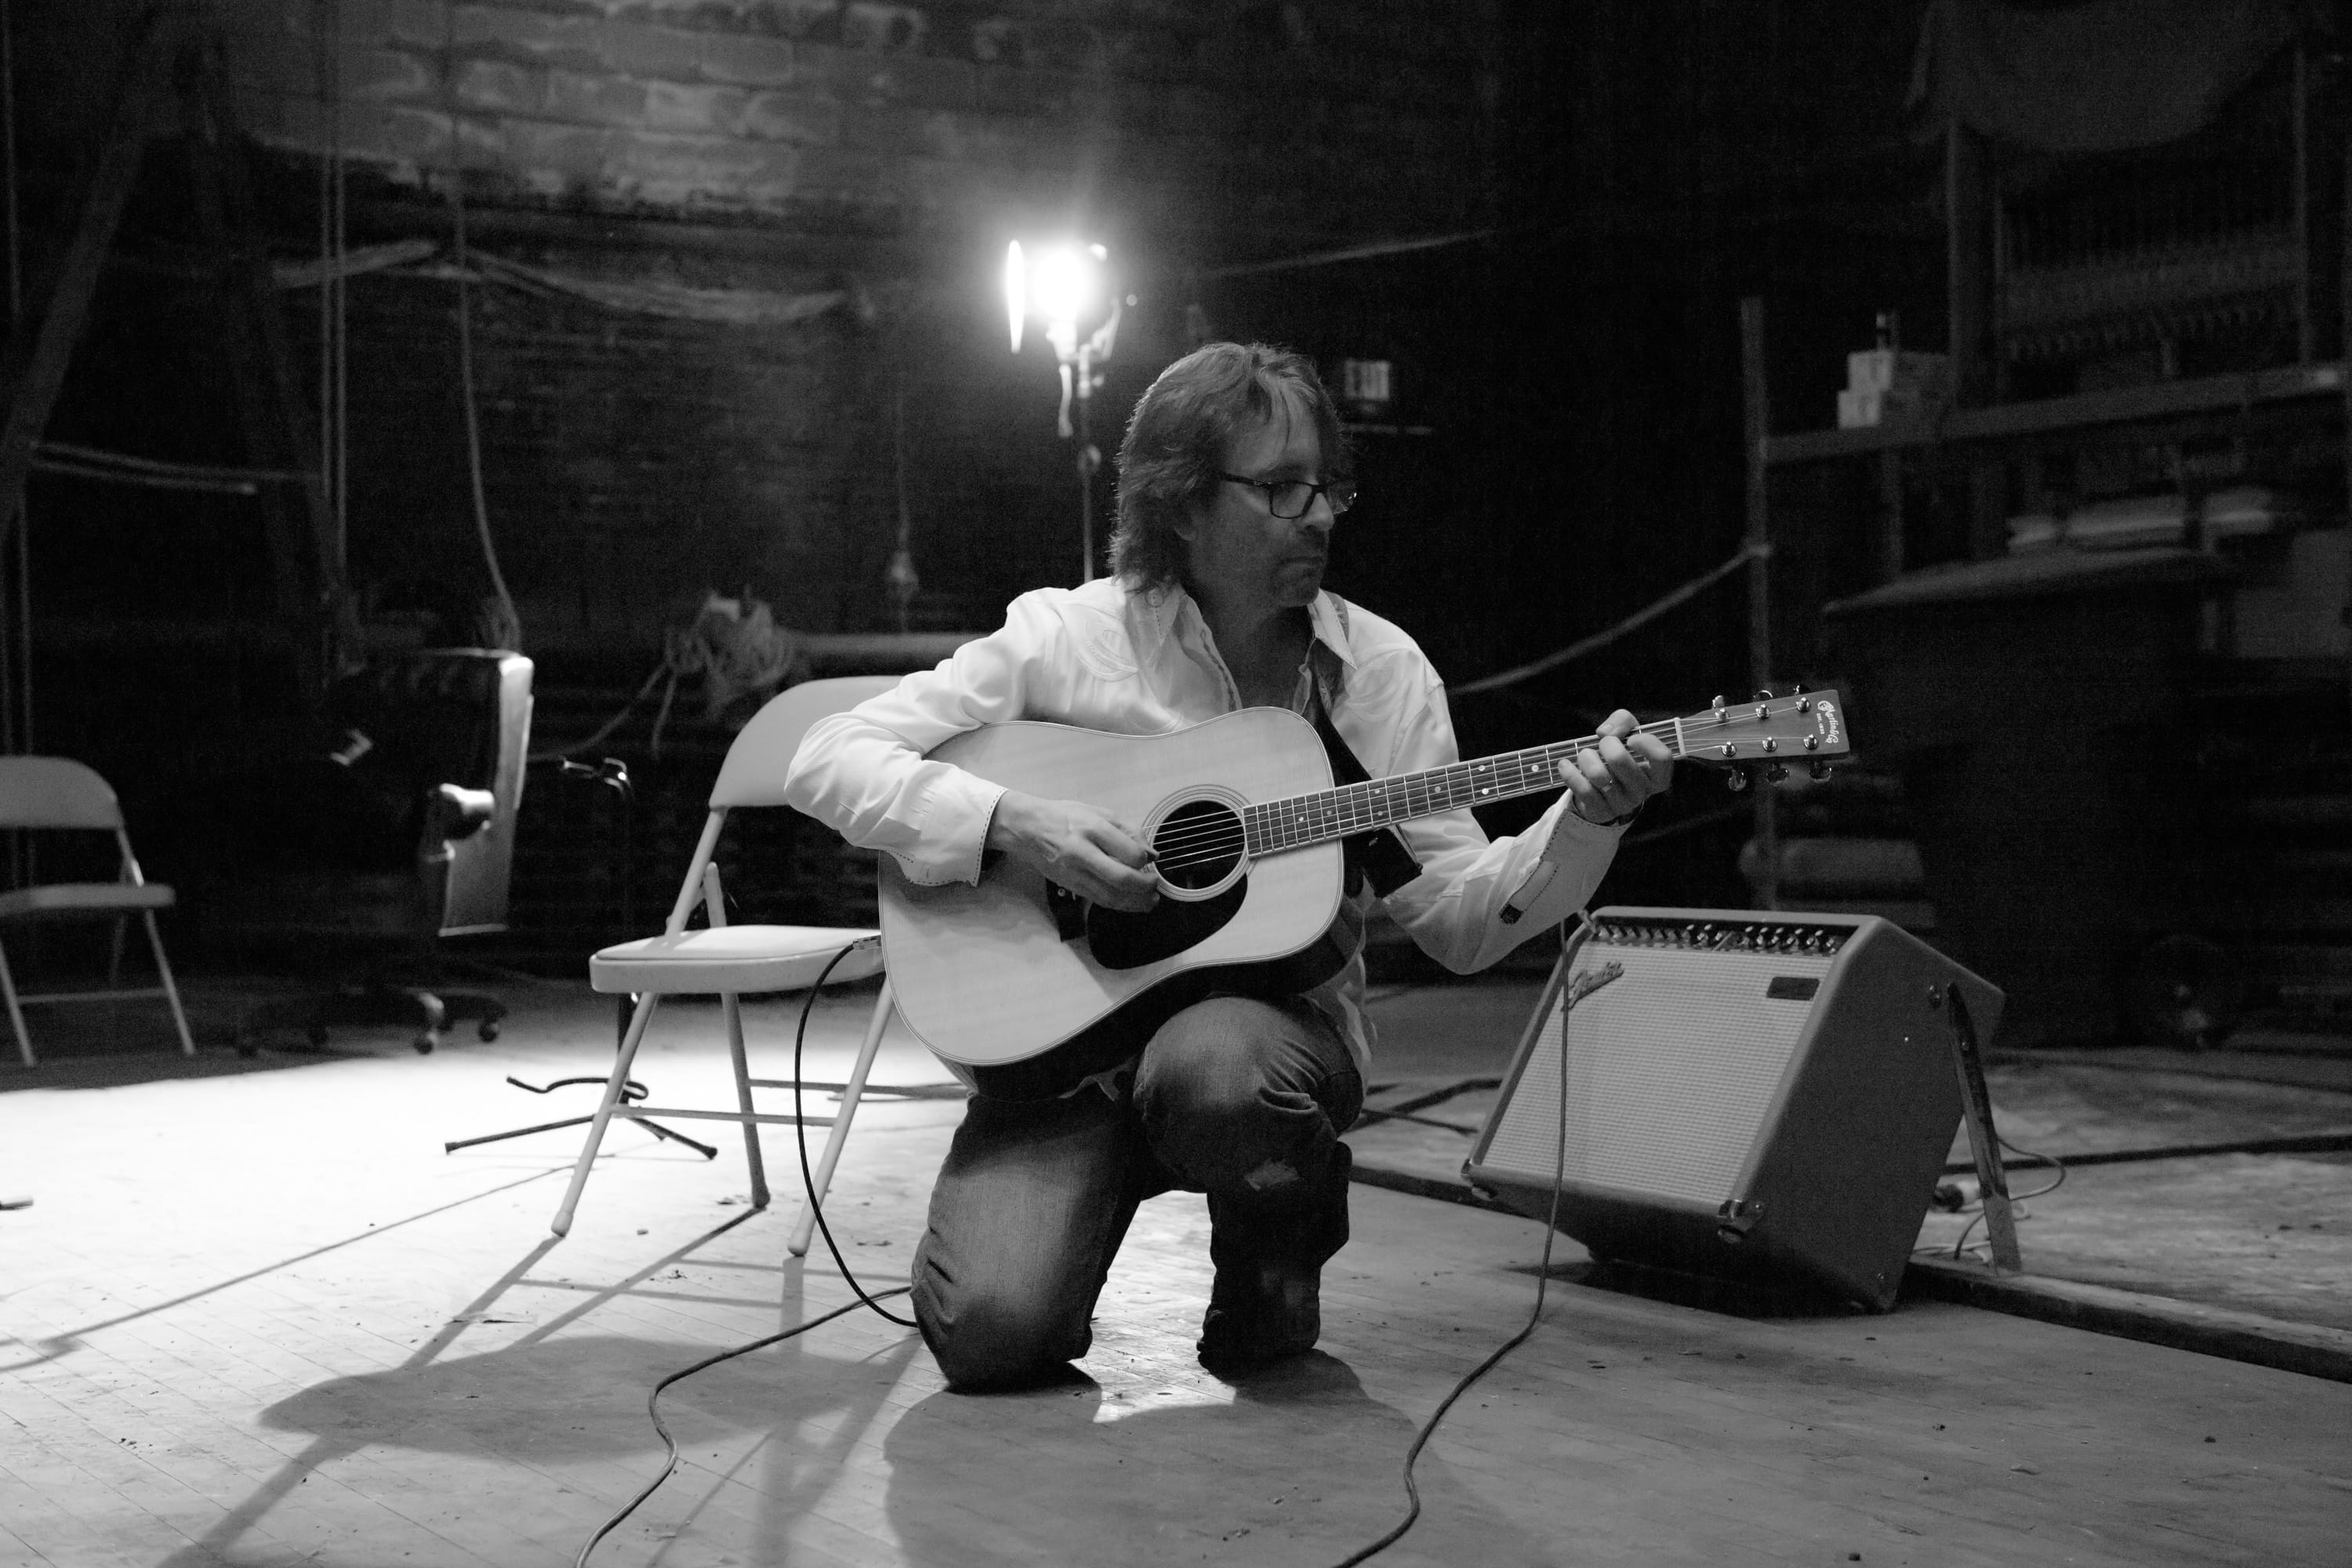 John Aulabaugh playing guitar